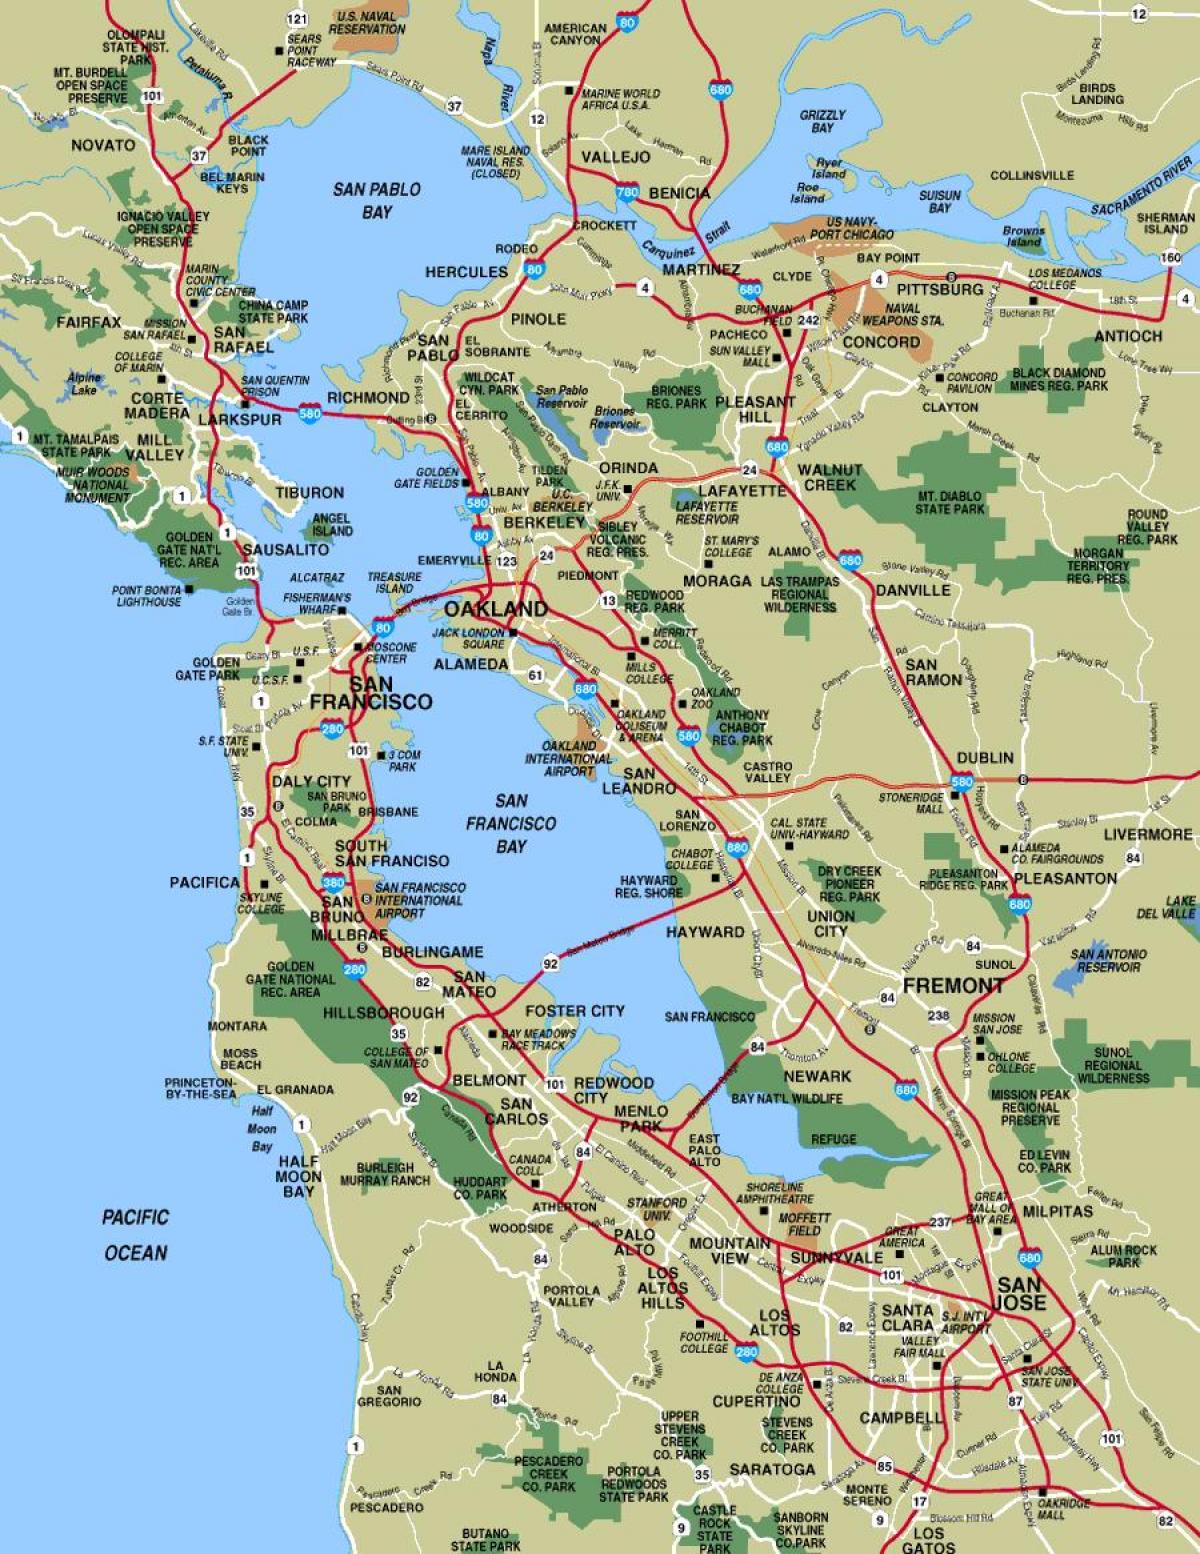 San Francisco og kort over området